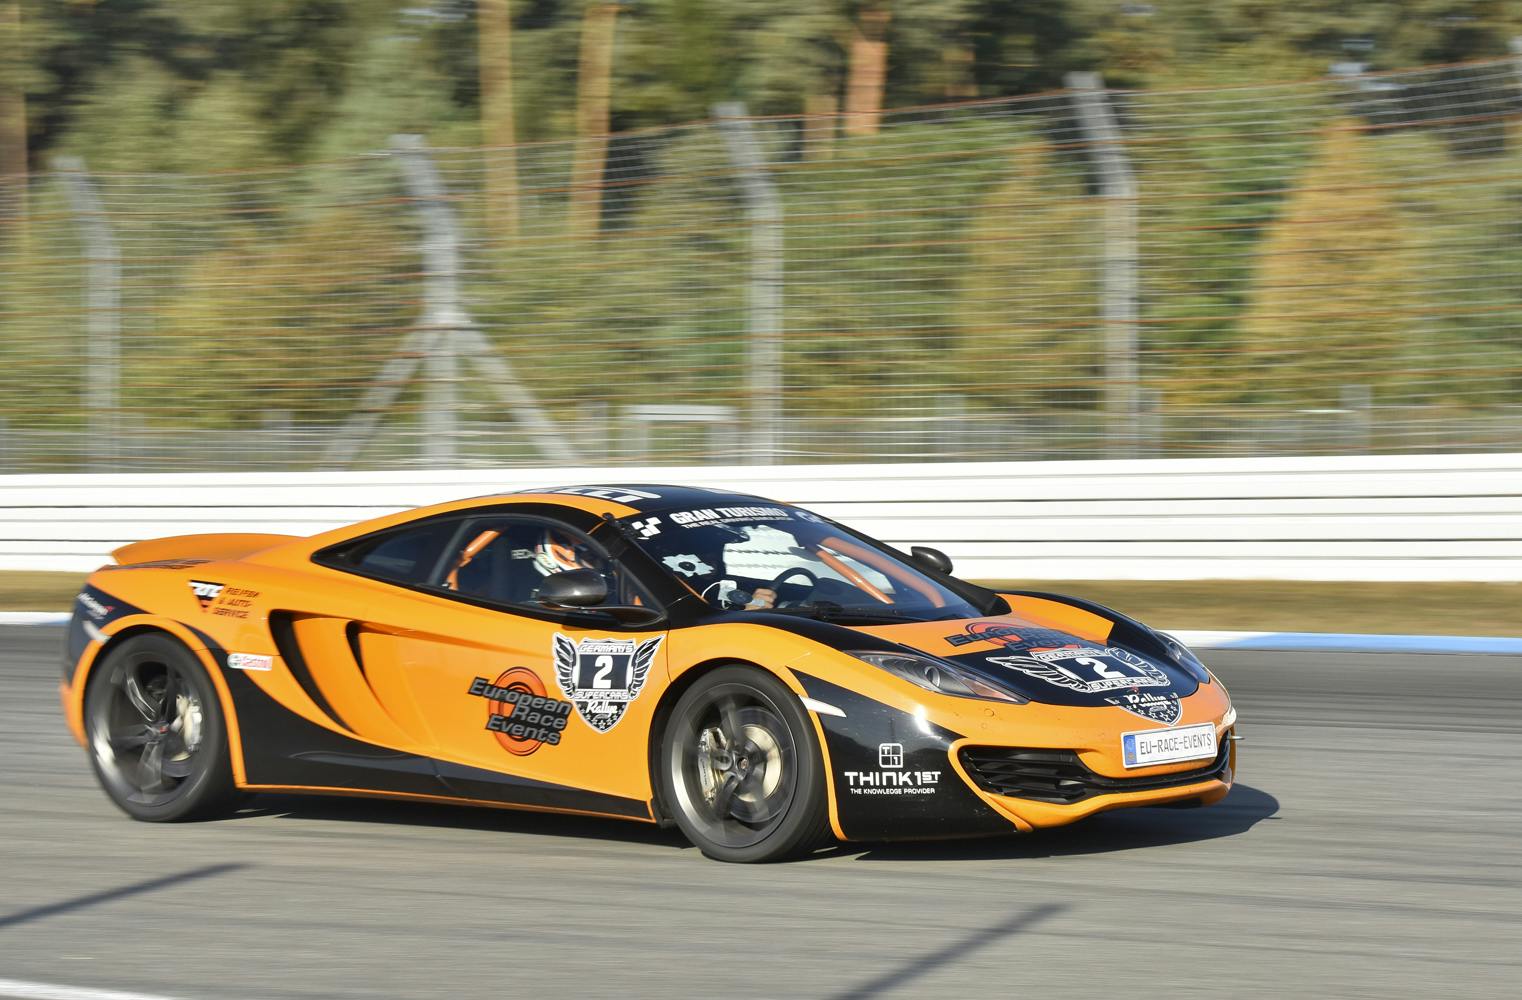 Am Hockenheimring | am Steuer des McLaren MP4-12C